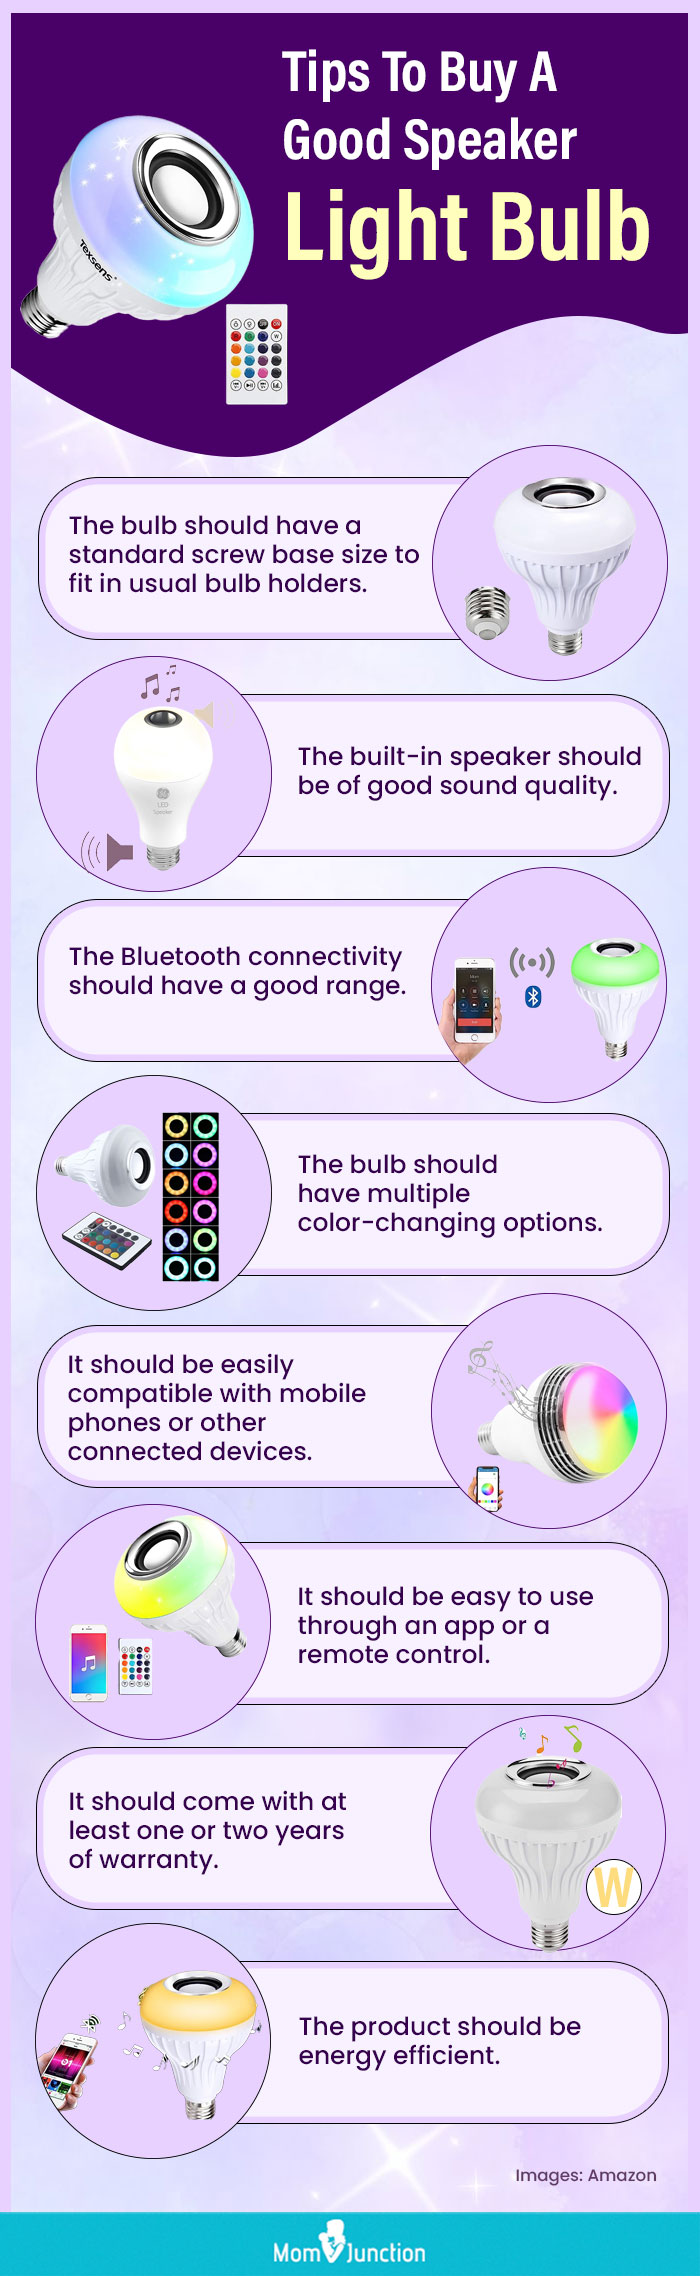 Tips To Buy A Good Speaker Light Bulb (infographic)